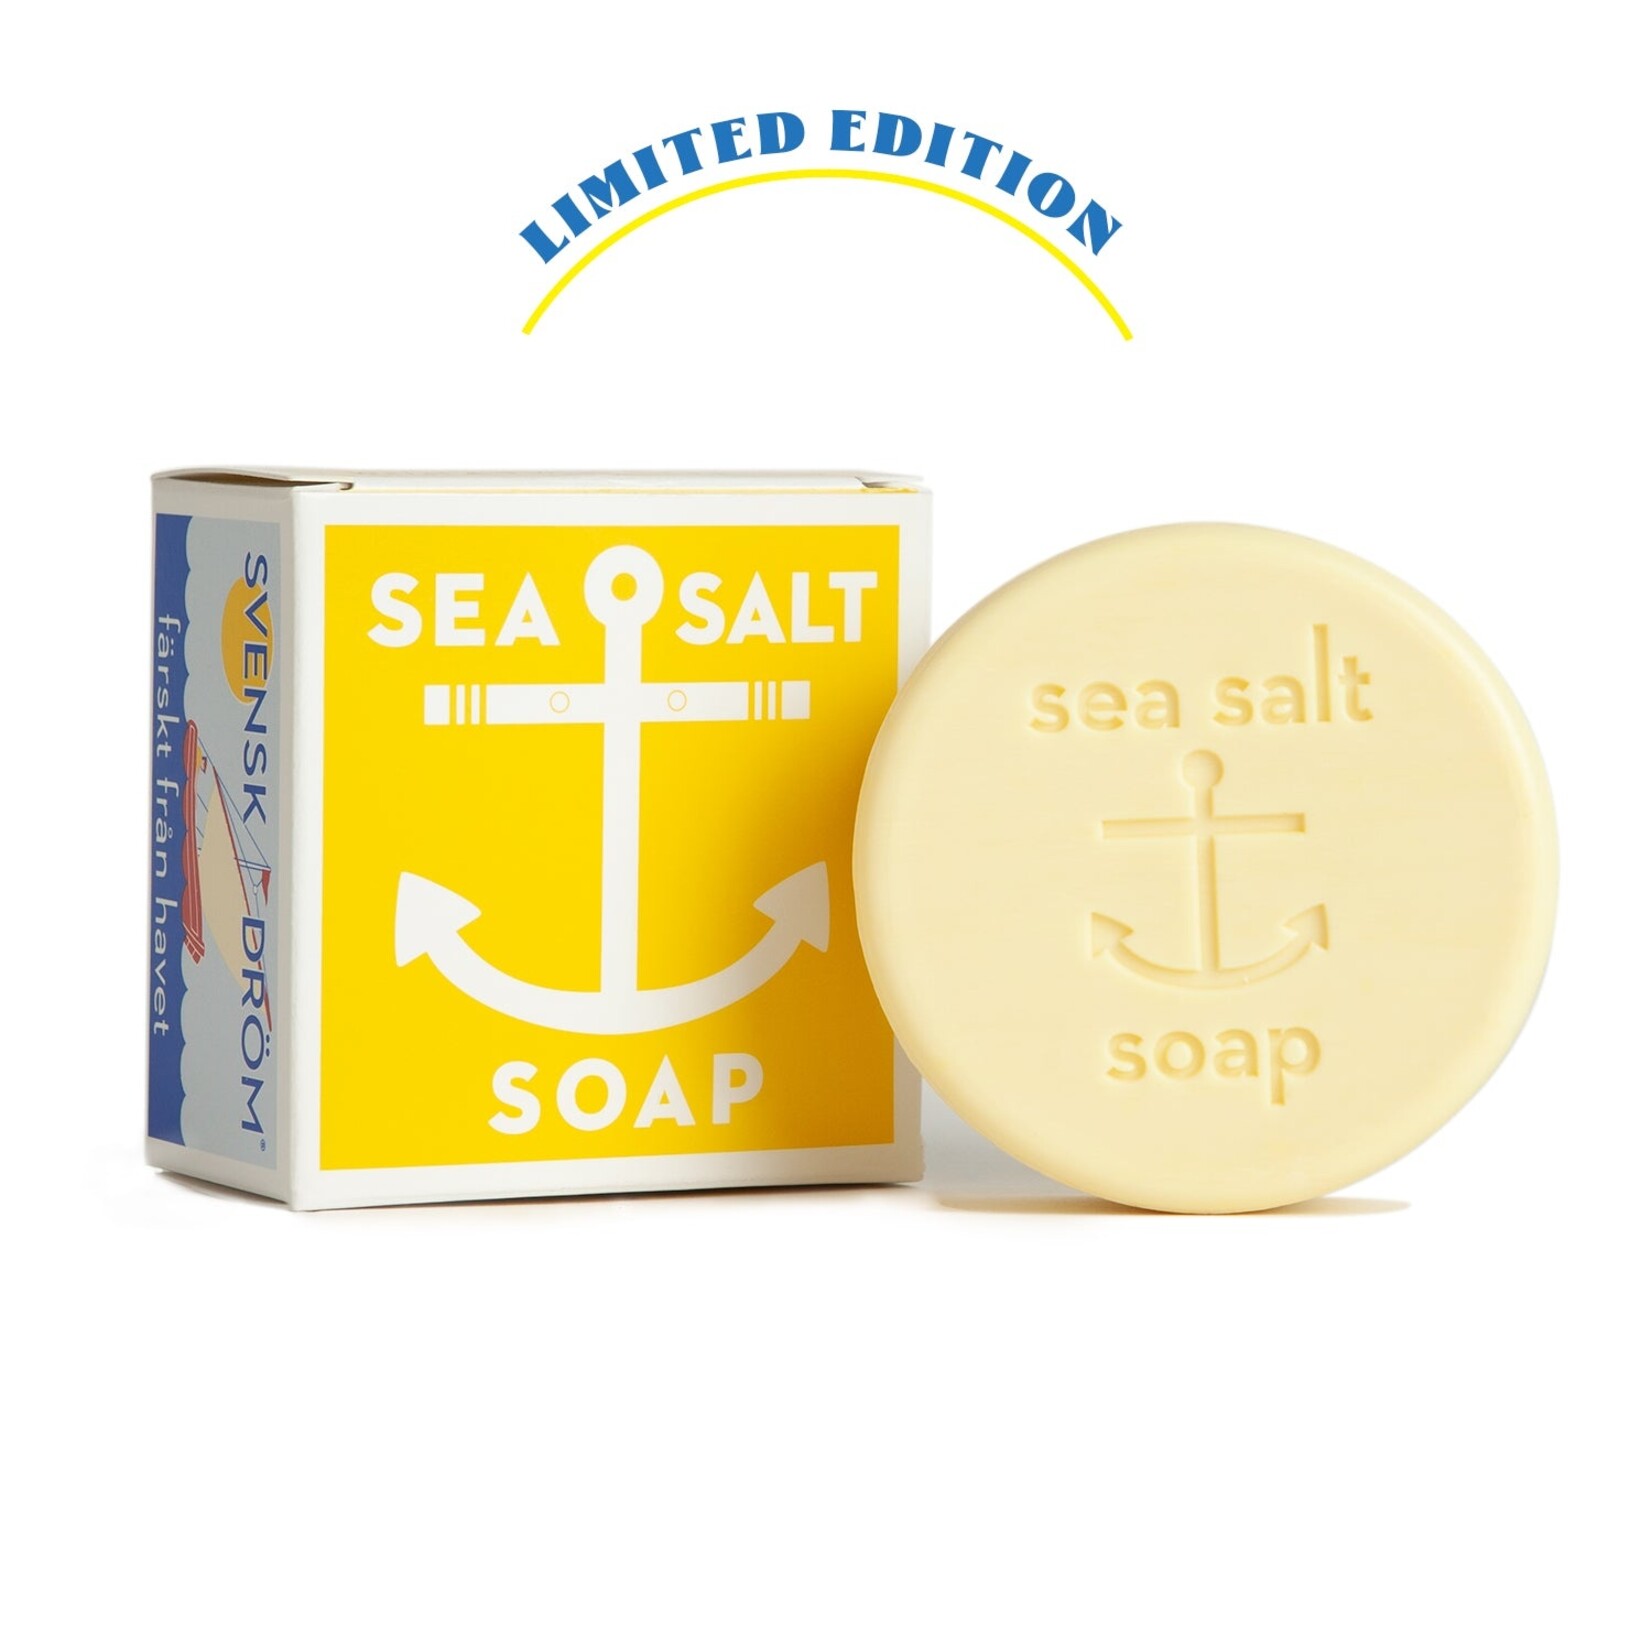 Swedish Dream Swedish Dream - Bar Soap - Sea Salt Lemon